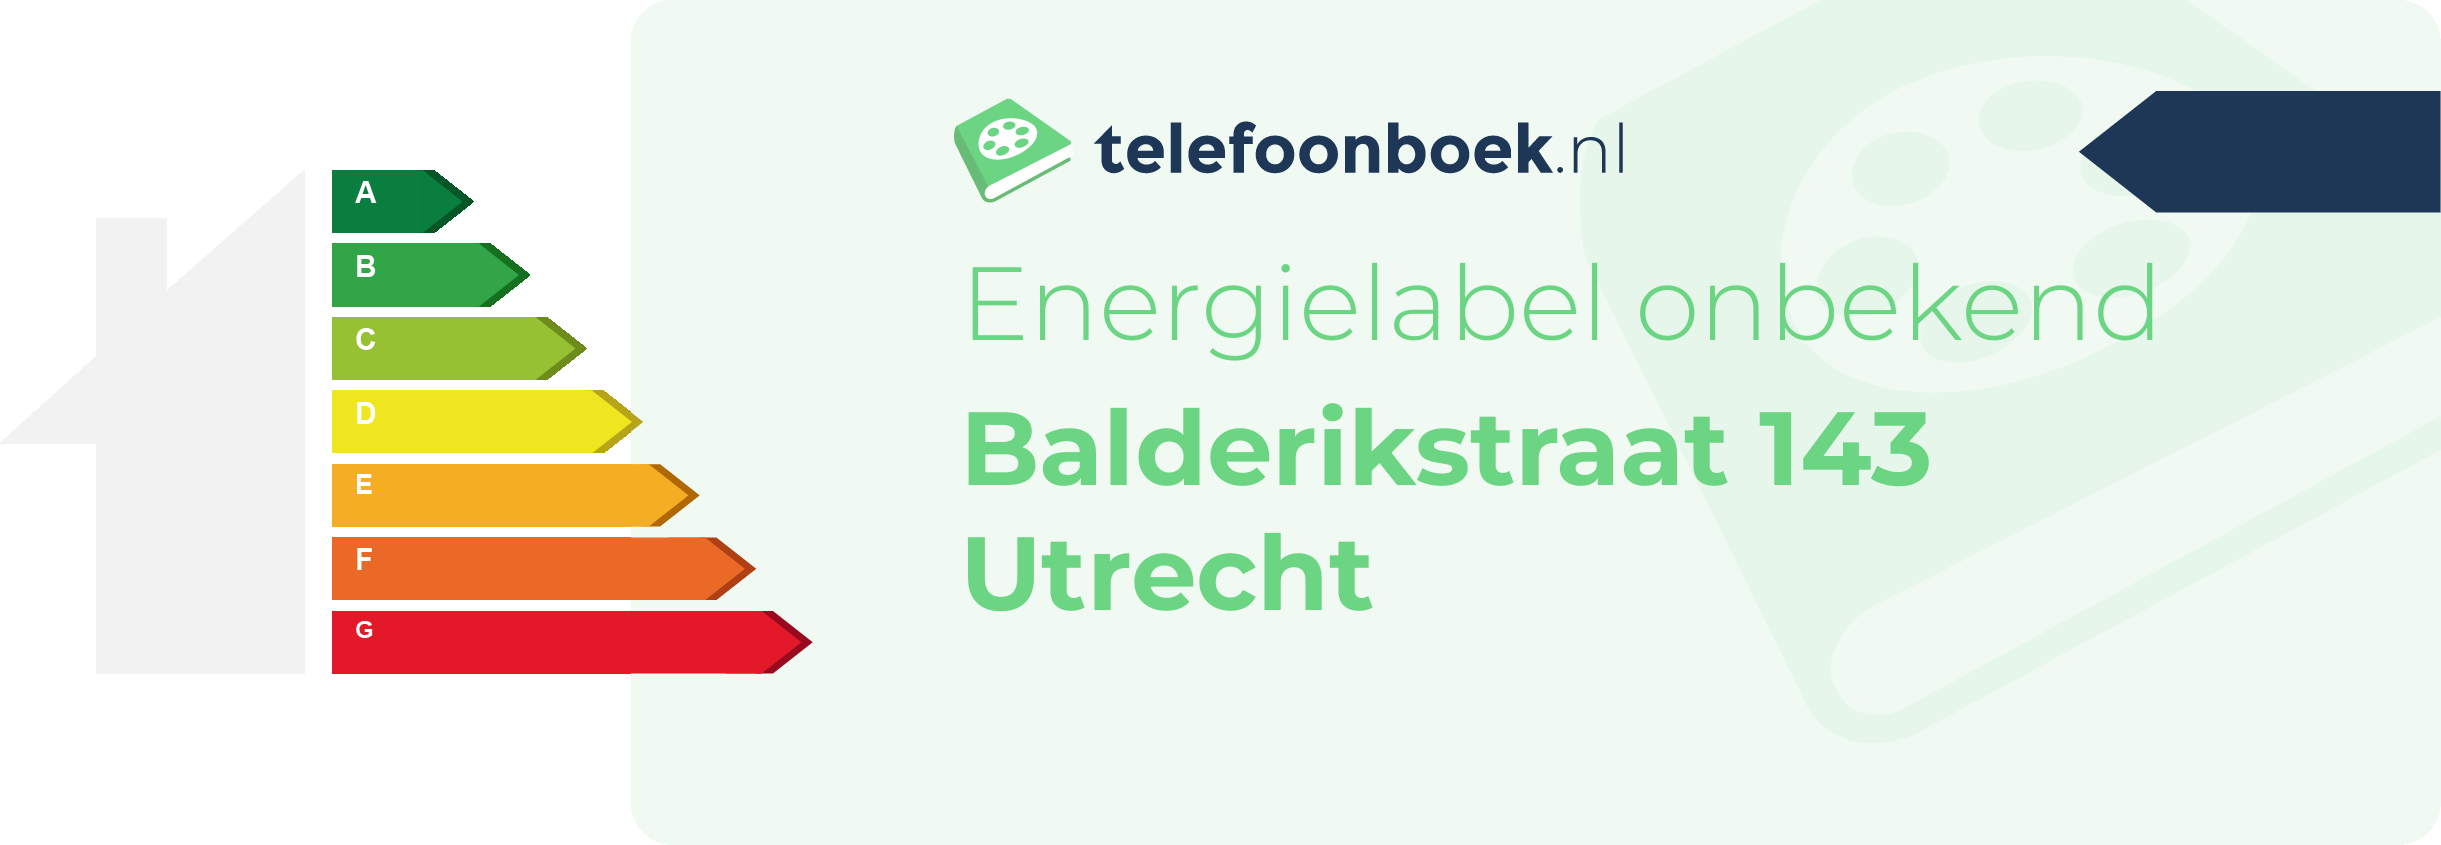 Energielabel Balderikstraat 143 Utrecht